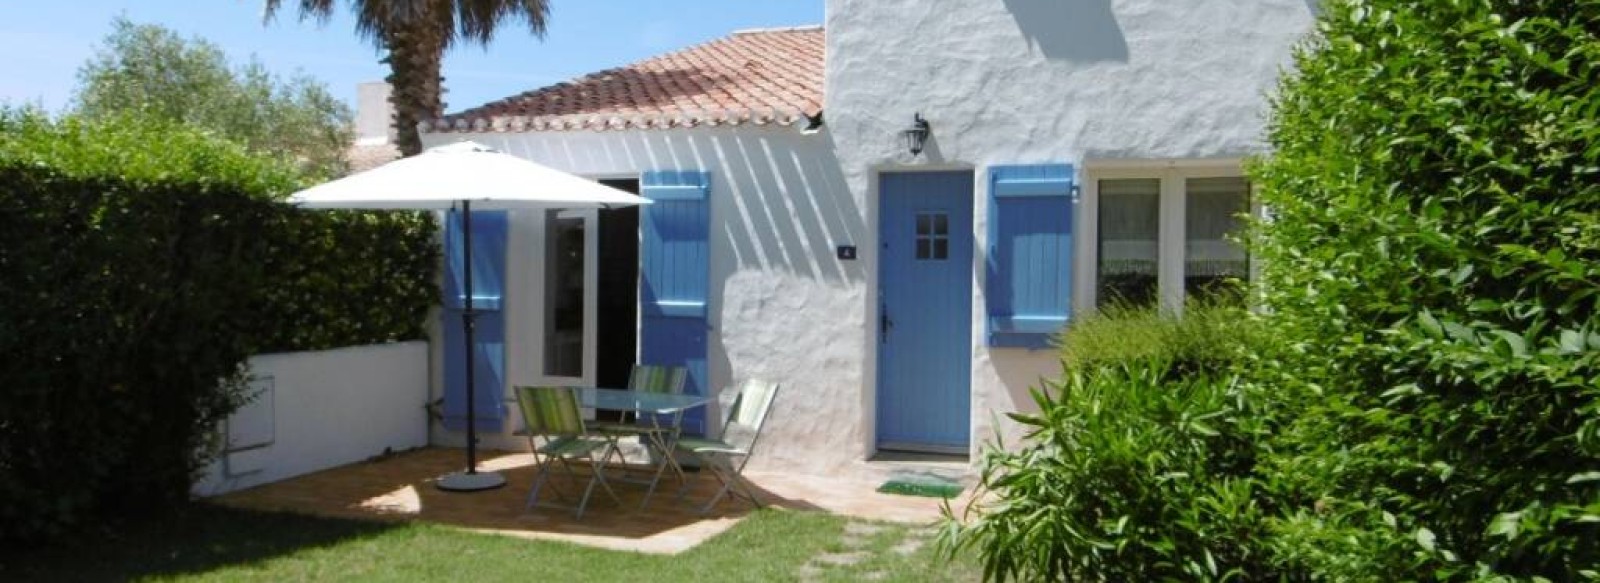 Maison de vacances a proximite du bourg de Noirmoutier en l'ile